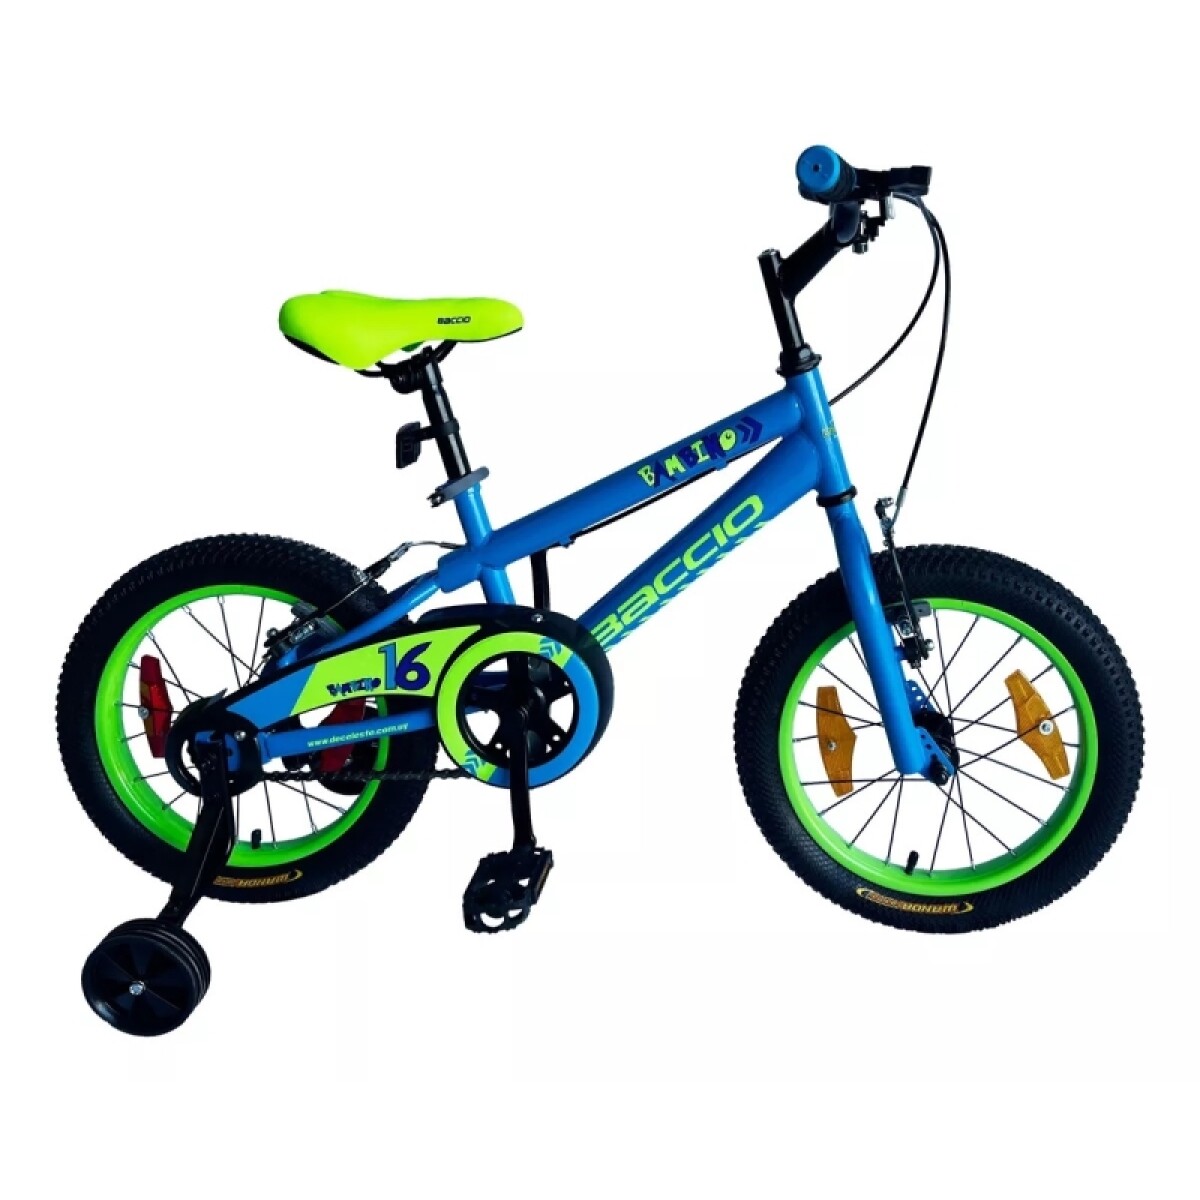 Bicicleta Baccio R.16 Niño Bambino (std) - Azul/verde 